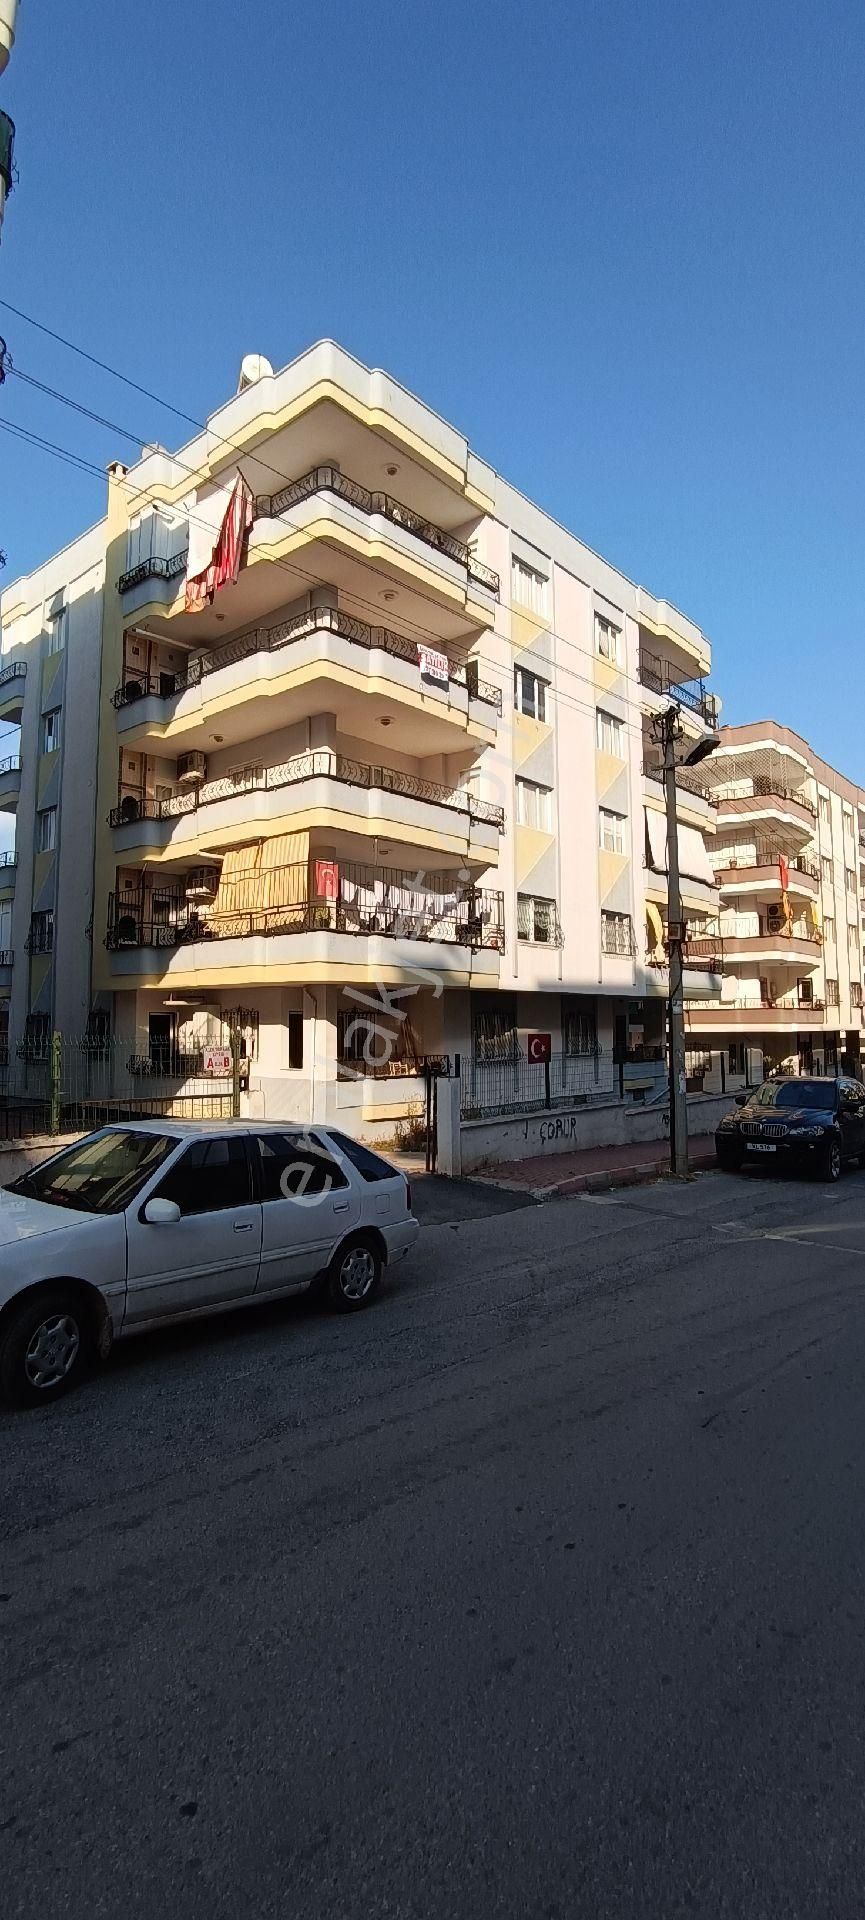 Tarsus Kırklarsırtı Satılık Daire Bizim Emlak'tan kırıklarsirtı mad de kombili satılık lüks daire